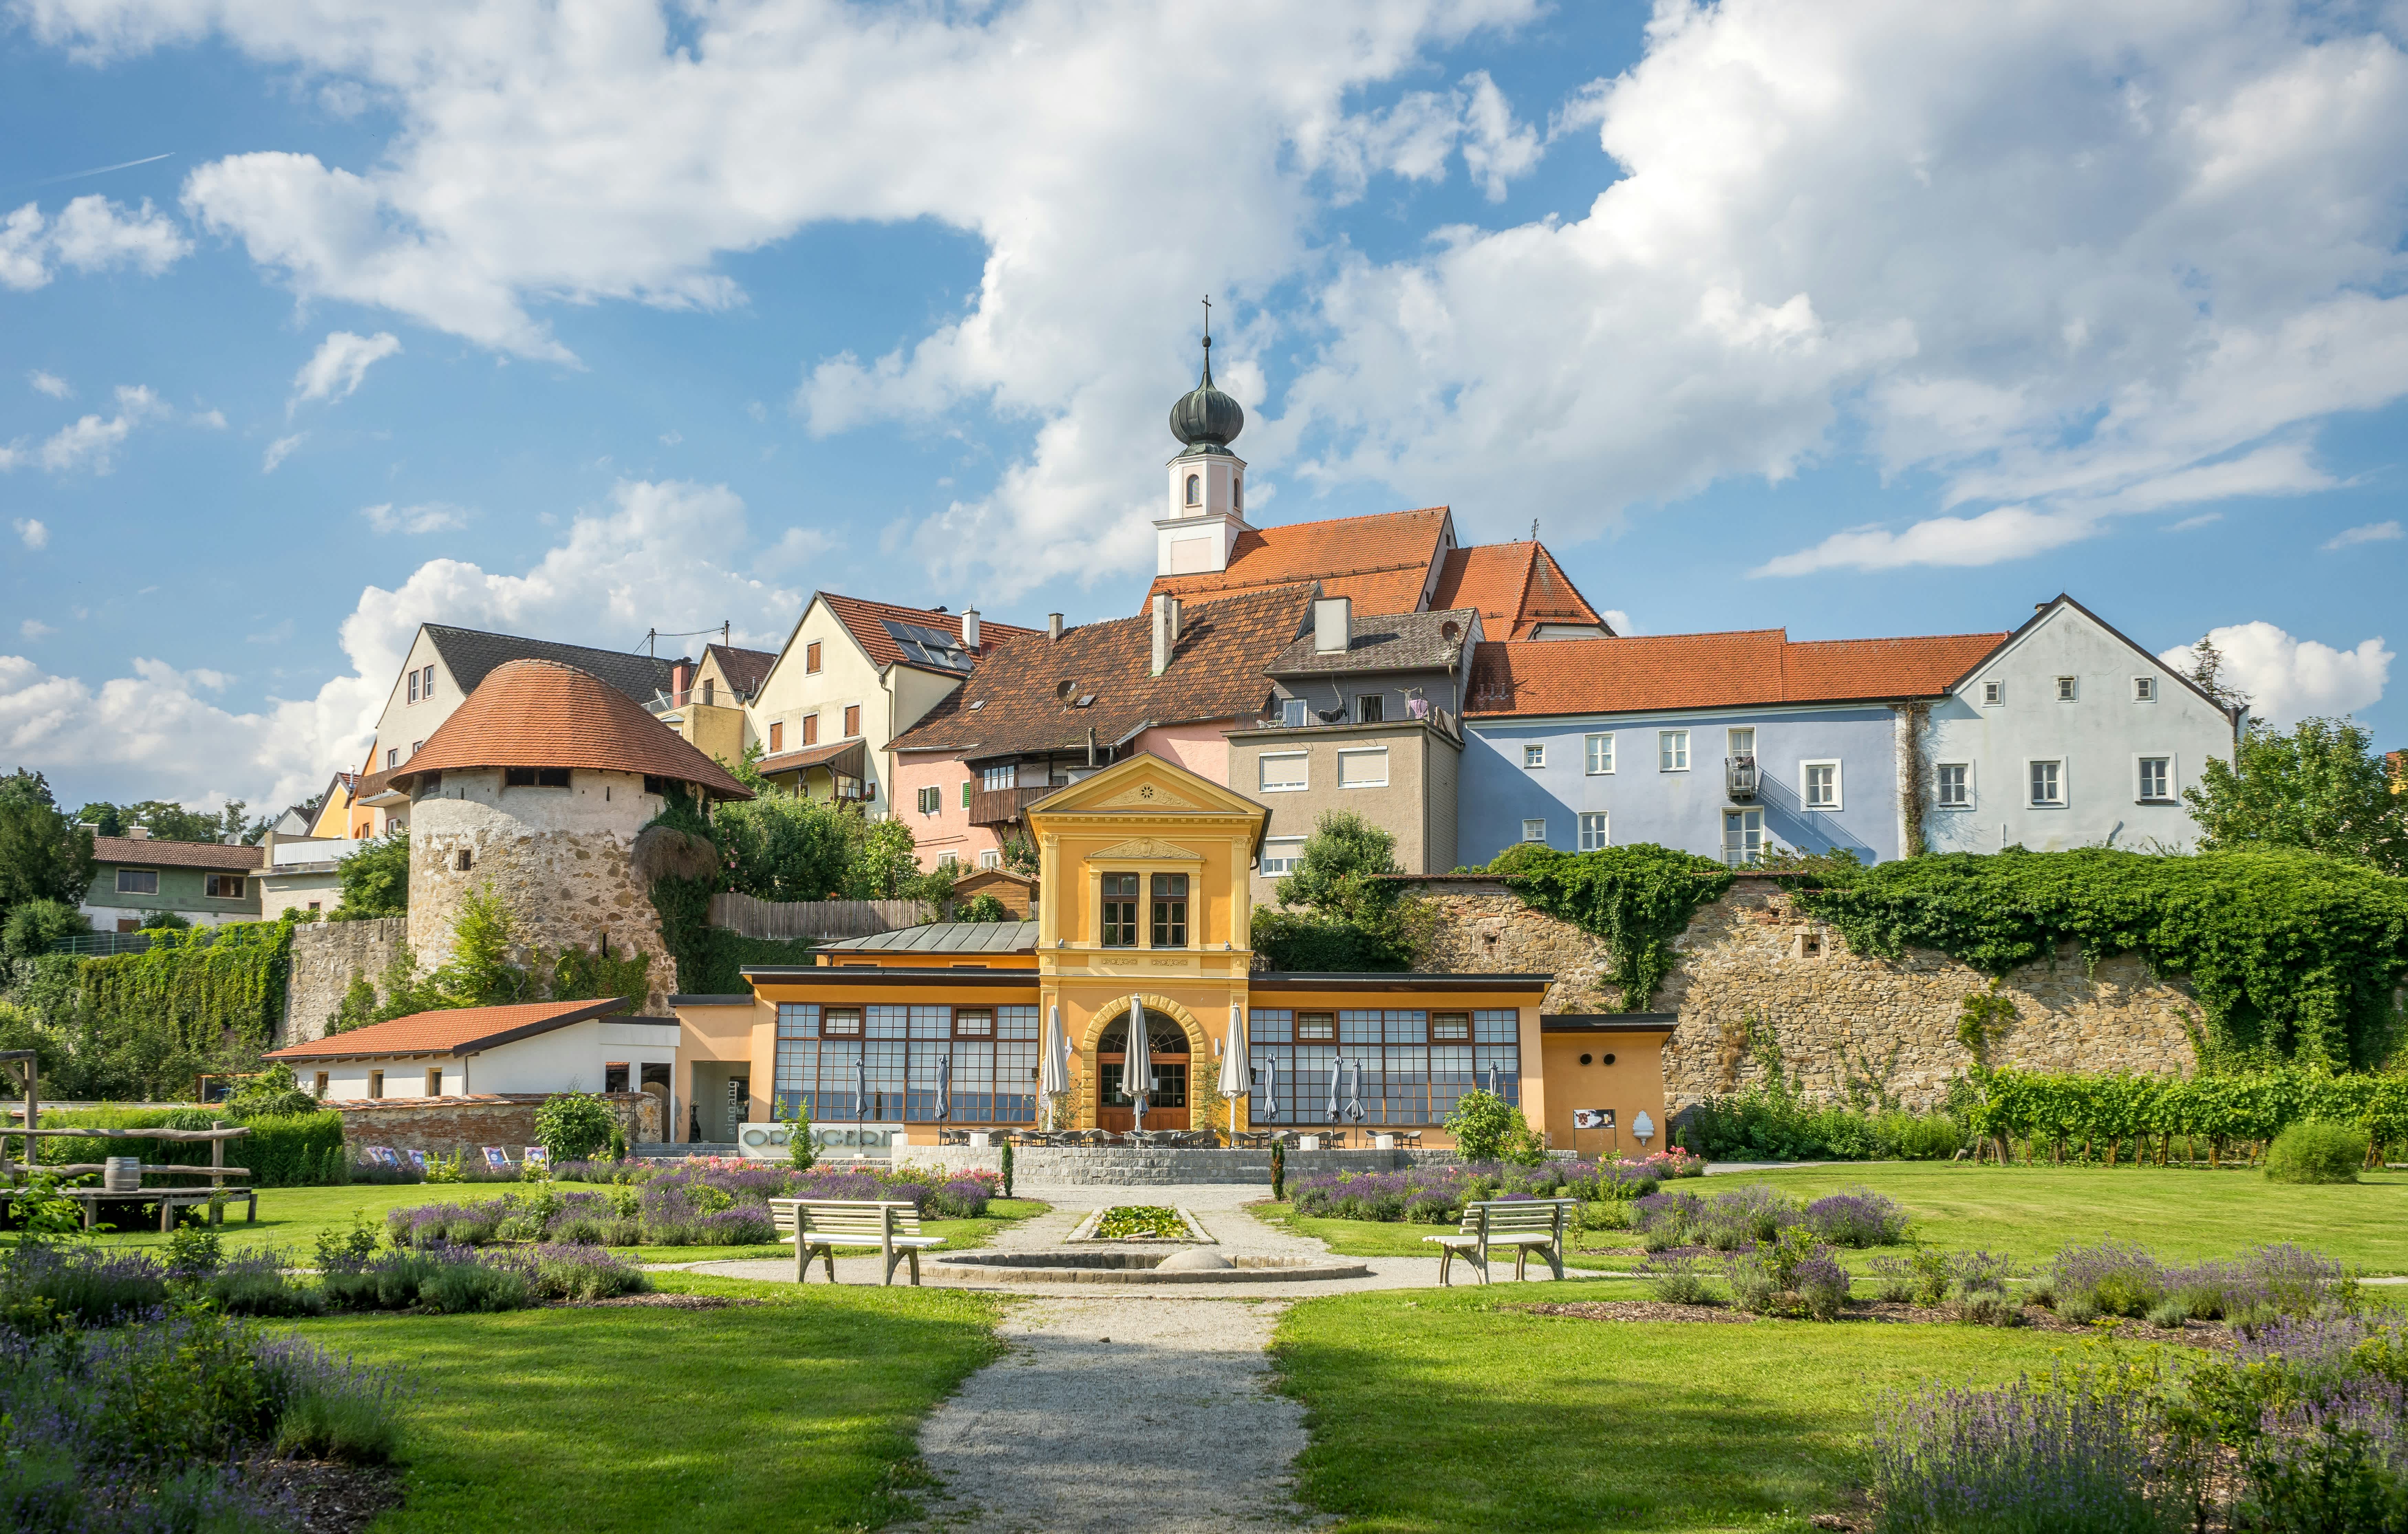 Erleben Sie die hohe Lebensqualität und regionalen Vorzüge von St. Peter am Hart in Oberösterreich. Entdecken Sie die Schönheit Oberösterreichs.